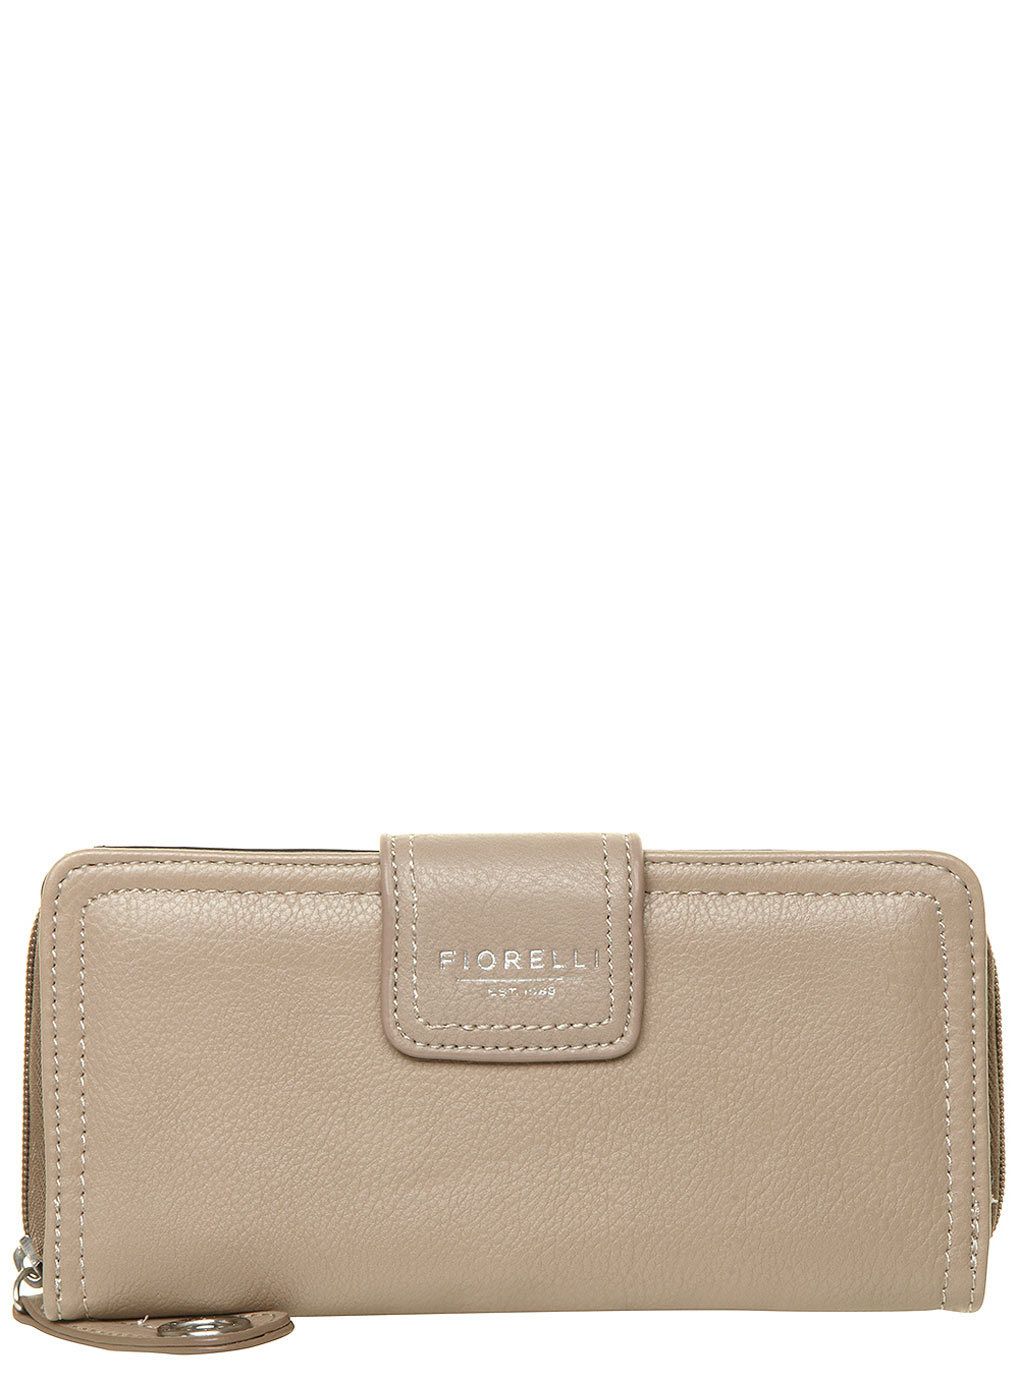 Fiorelli Grey purse 18360027